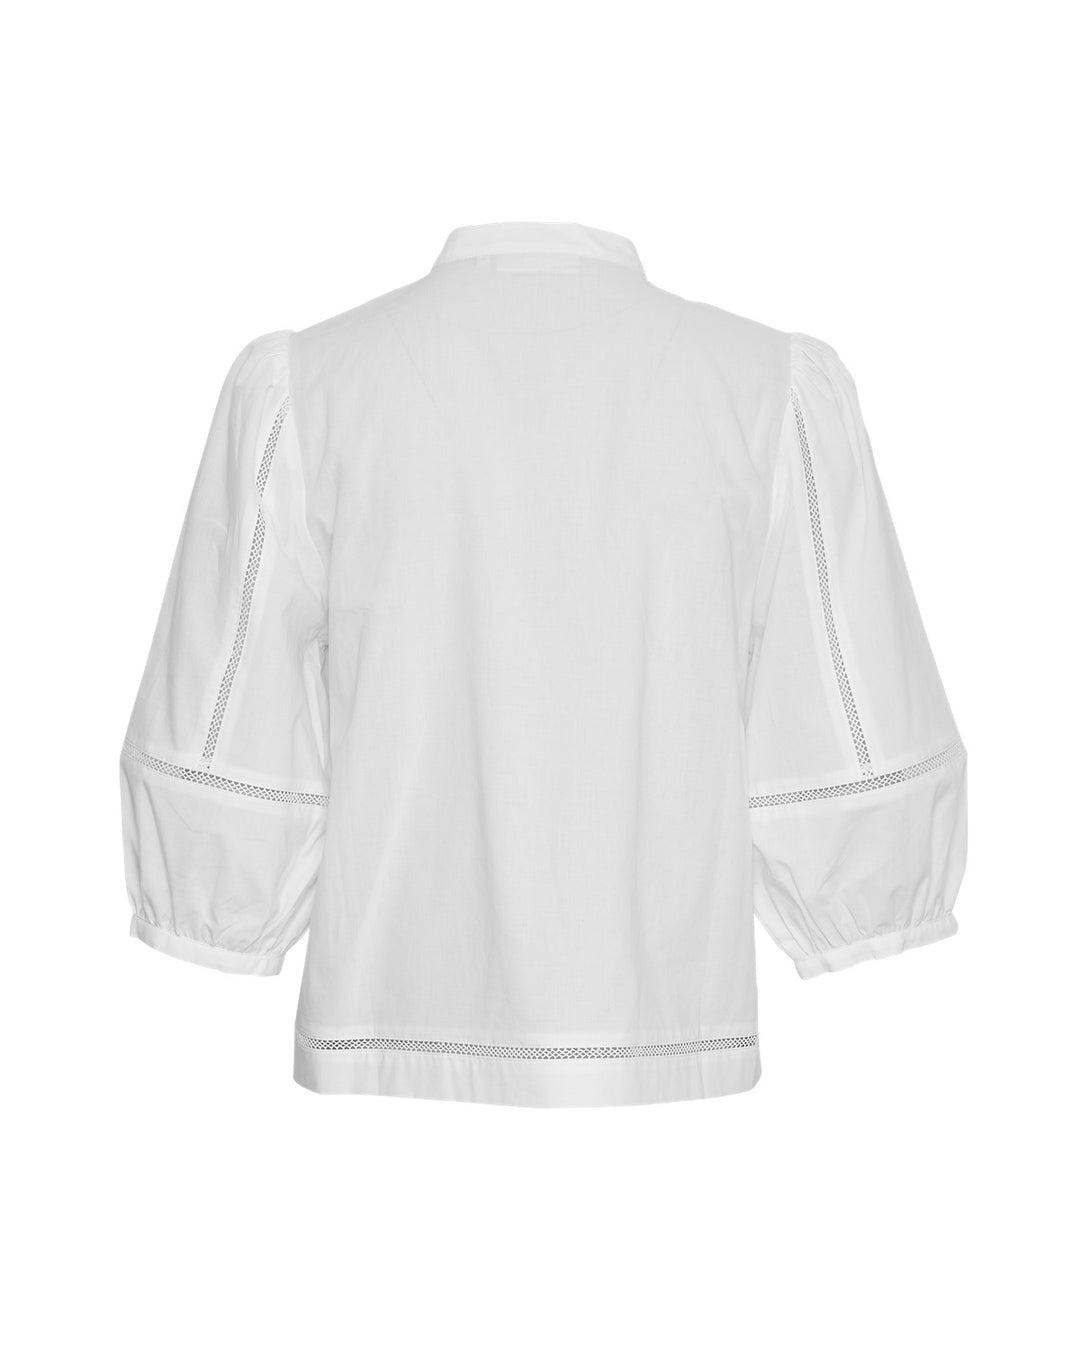 MSCHErendia 2/4 Shirt  Bright White